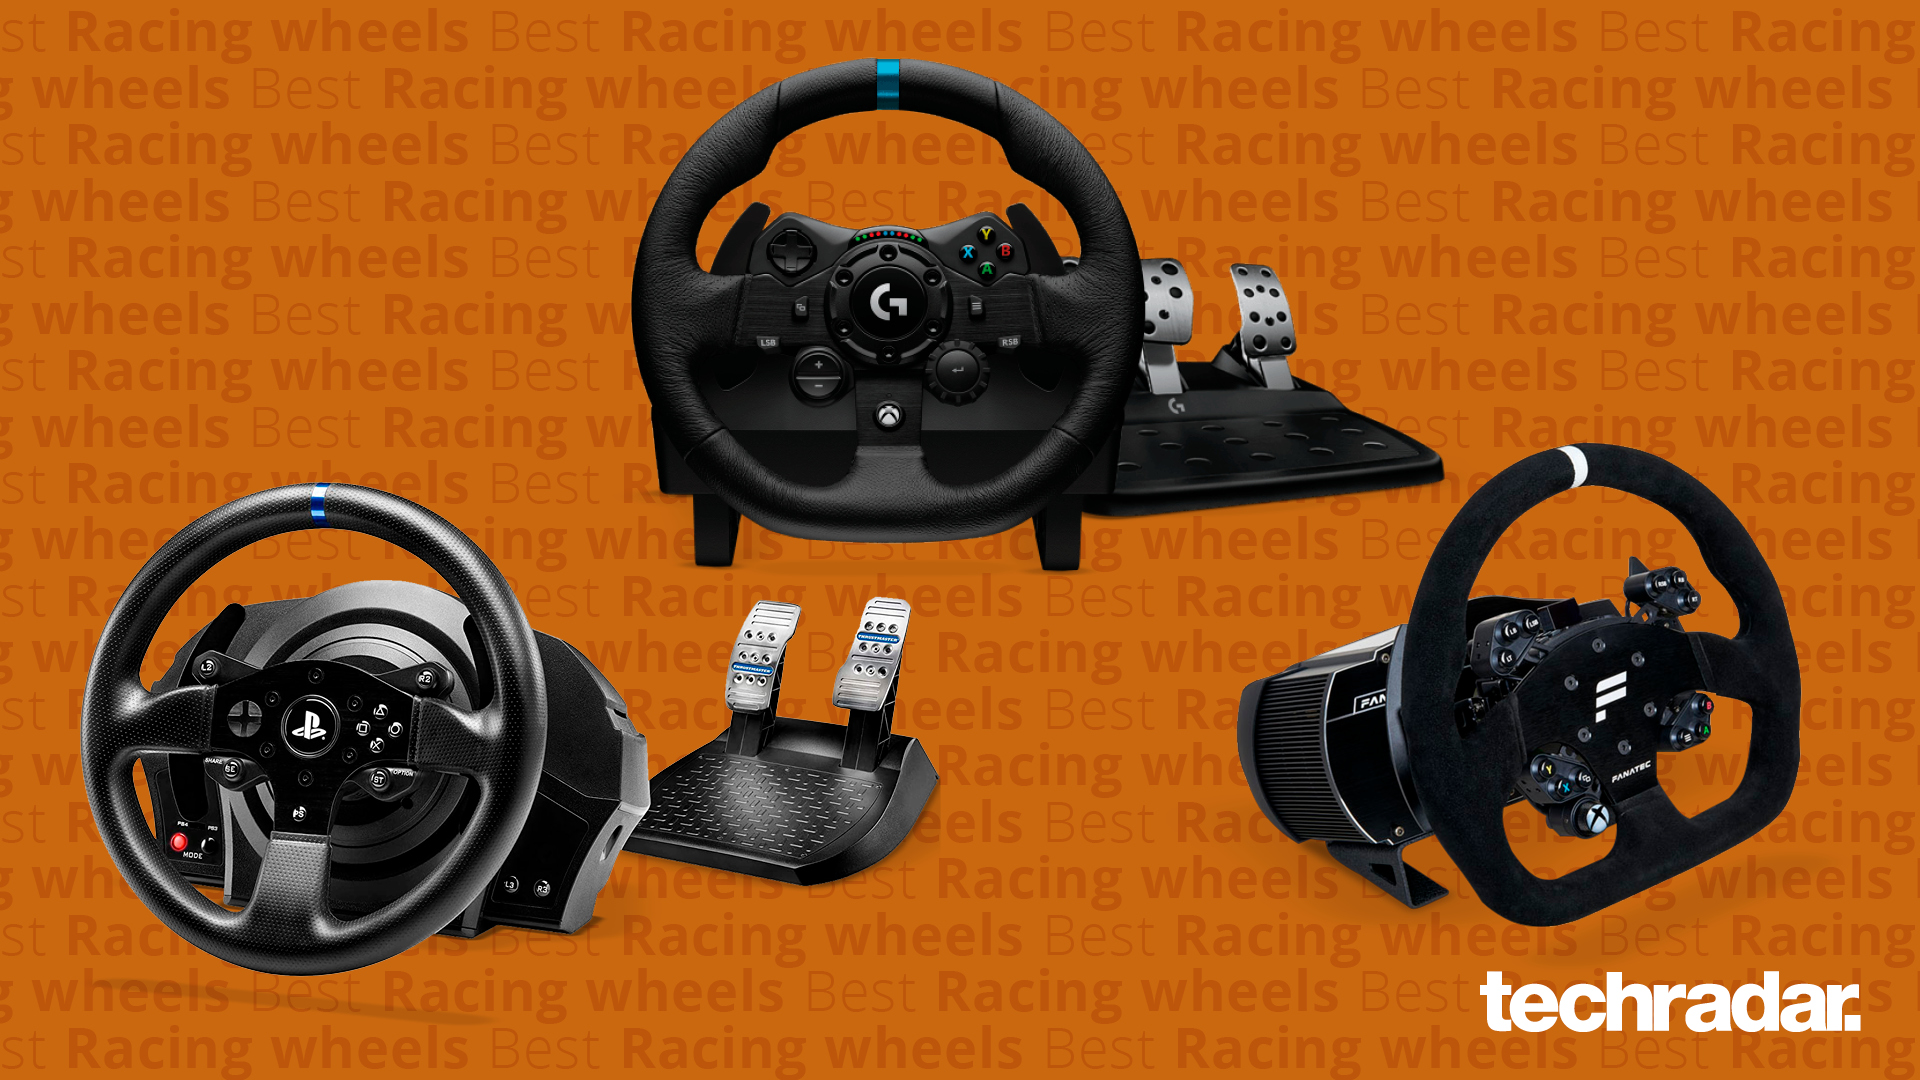 Verrassend genoeg Beschietingen Fonetiek Best racing wheels | TechRadar